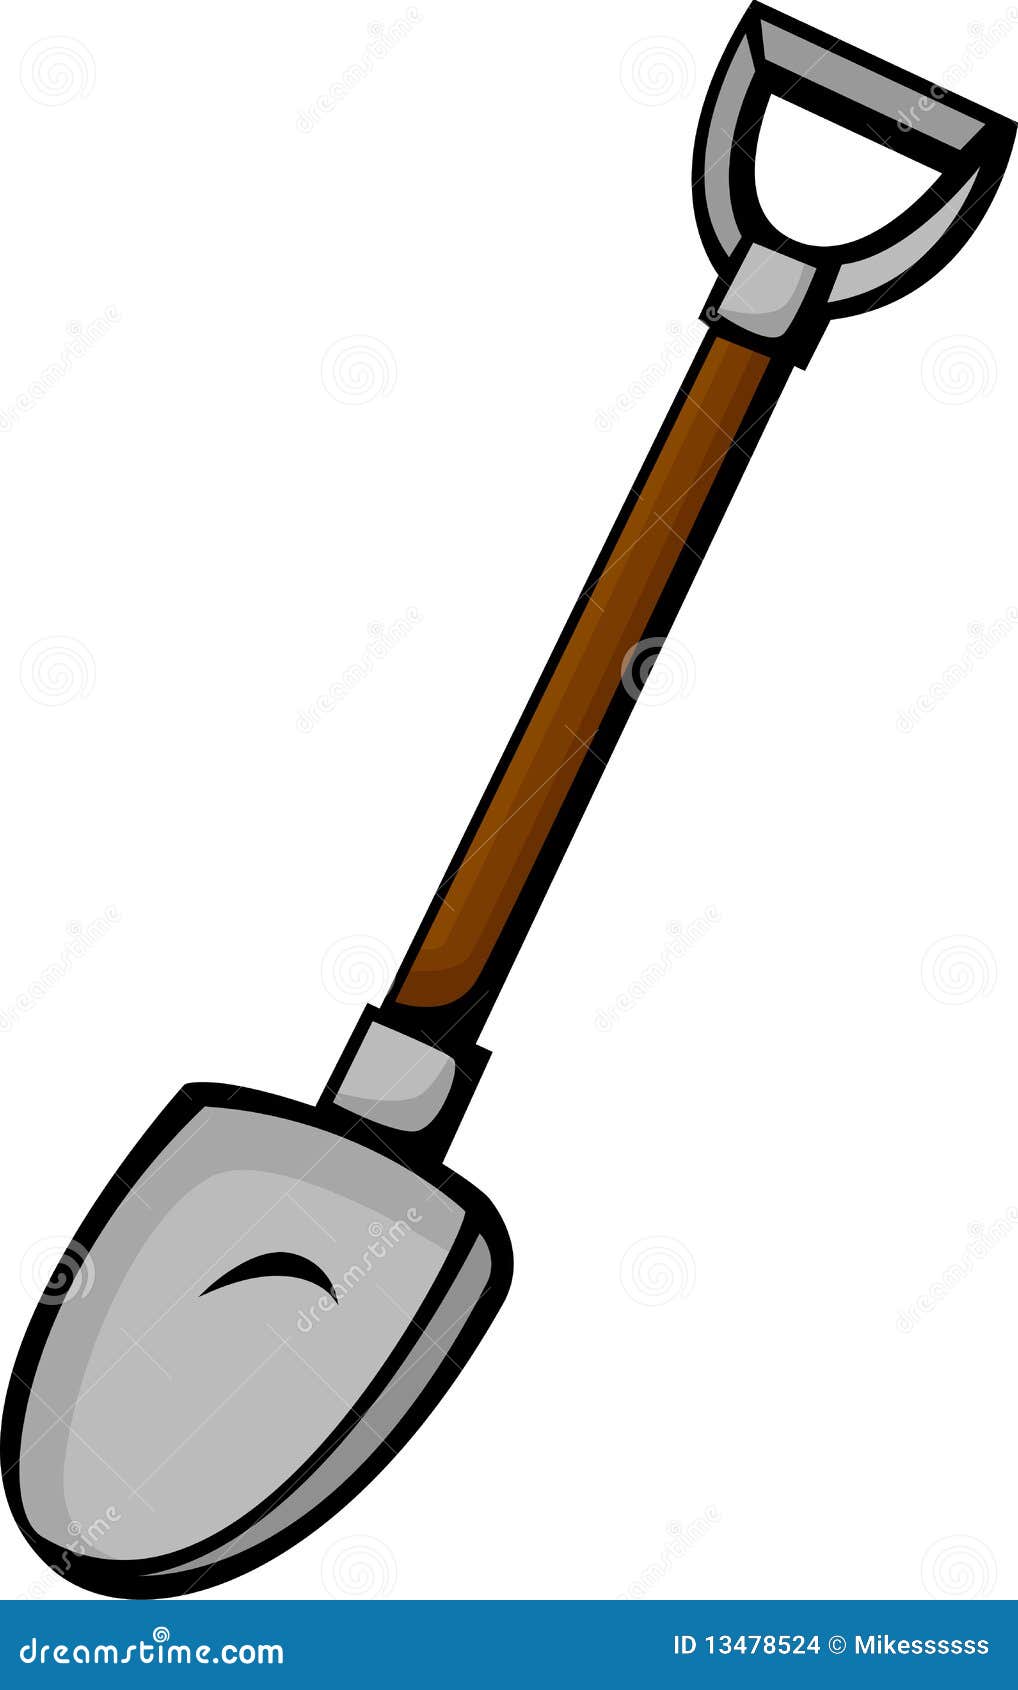 Shovel vector illustration stock vector. Illustration of tool - 13478524